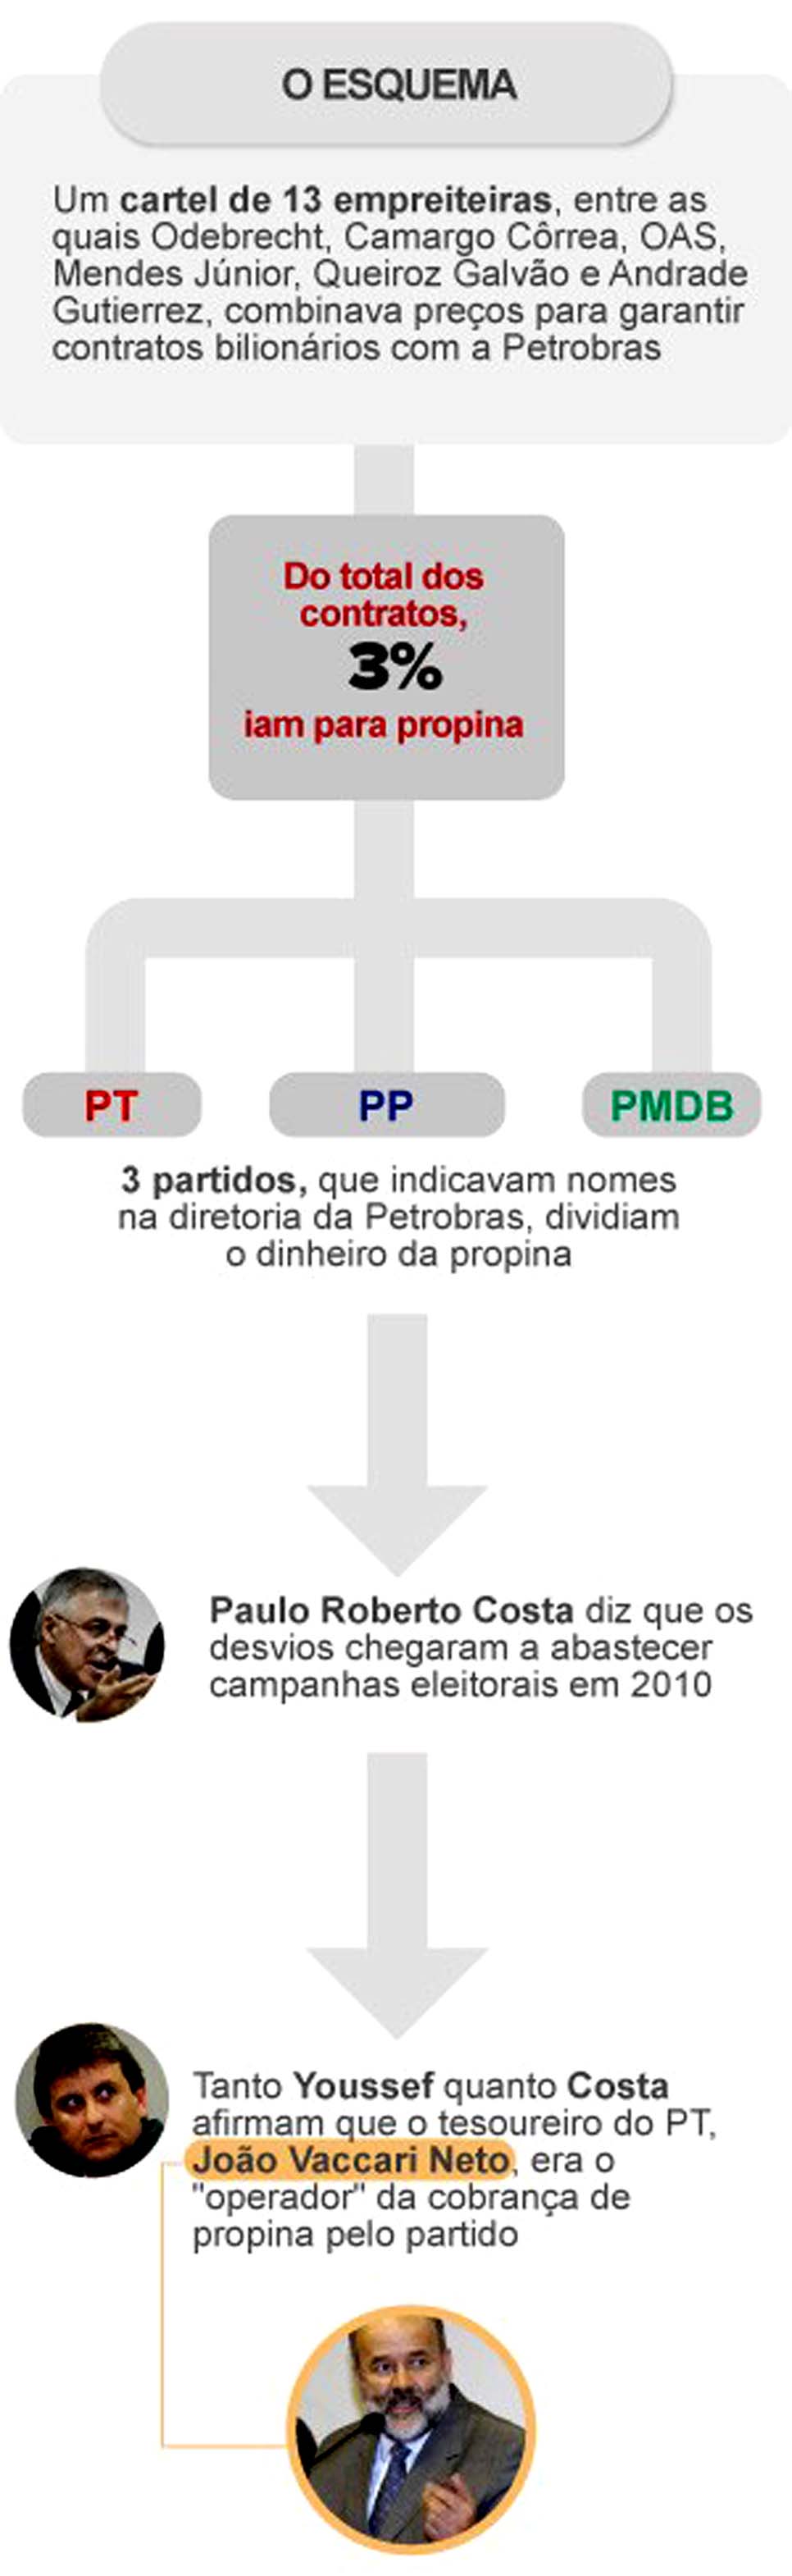 O Globo - G1.com.br - Petrobras: SEC/EUA investiga prejuzo aos acionistas - 17/10/14